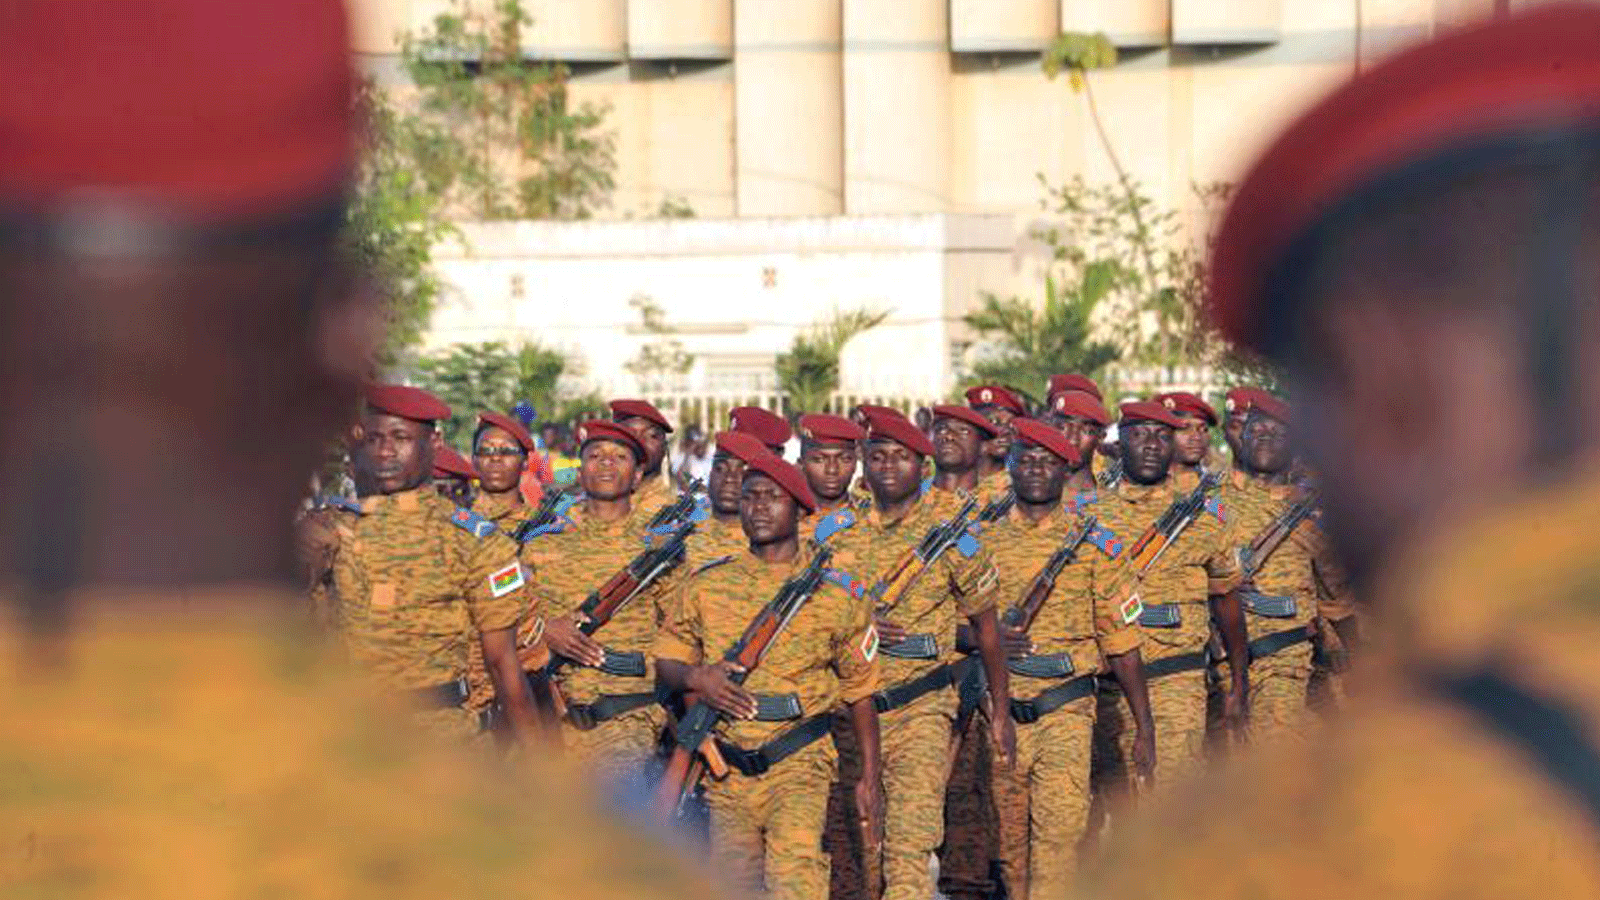 جنود من جيش بوركينا فاسو يشاركون في عرض عسكري في واغادوغو.